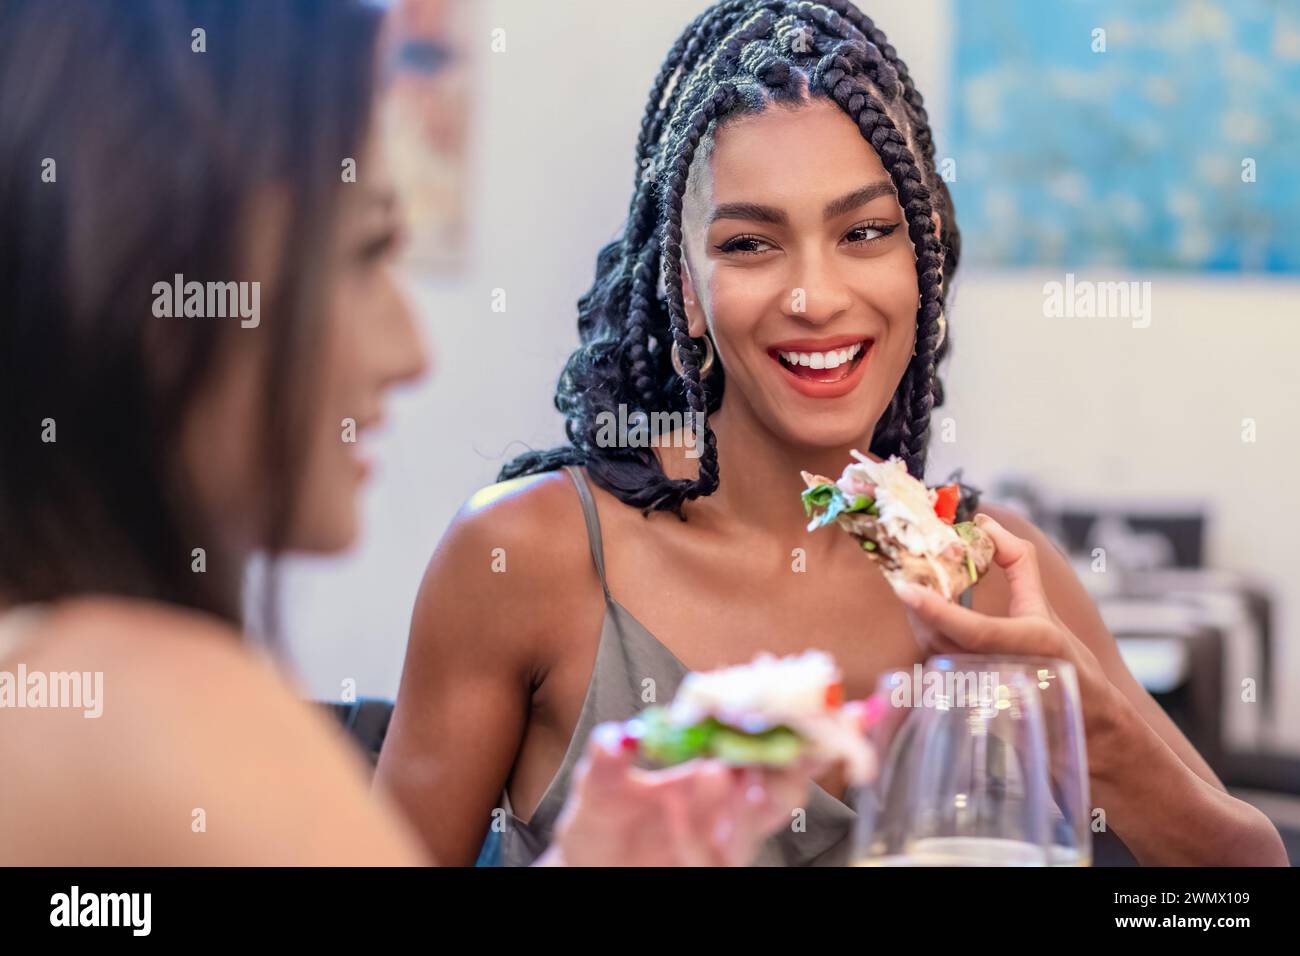 Lächelnde junge Frau, die ein frisches, köstliches Essen genießt - zwangloses Essen in urbaner Umgebung - Gourmet-Erlebnis mit Freunden. Stockfoto